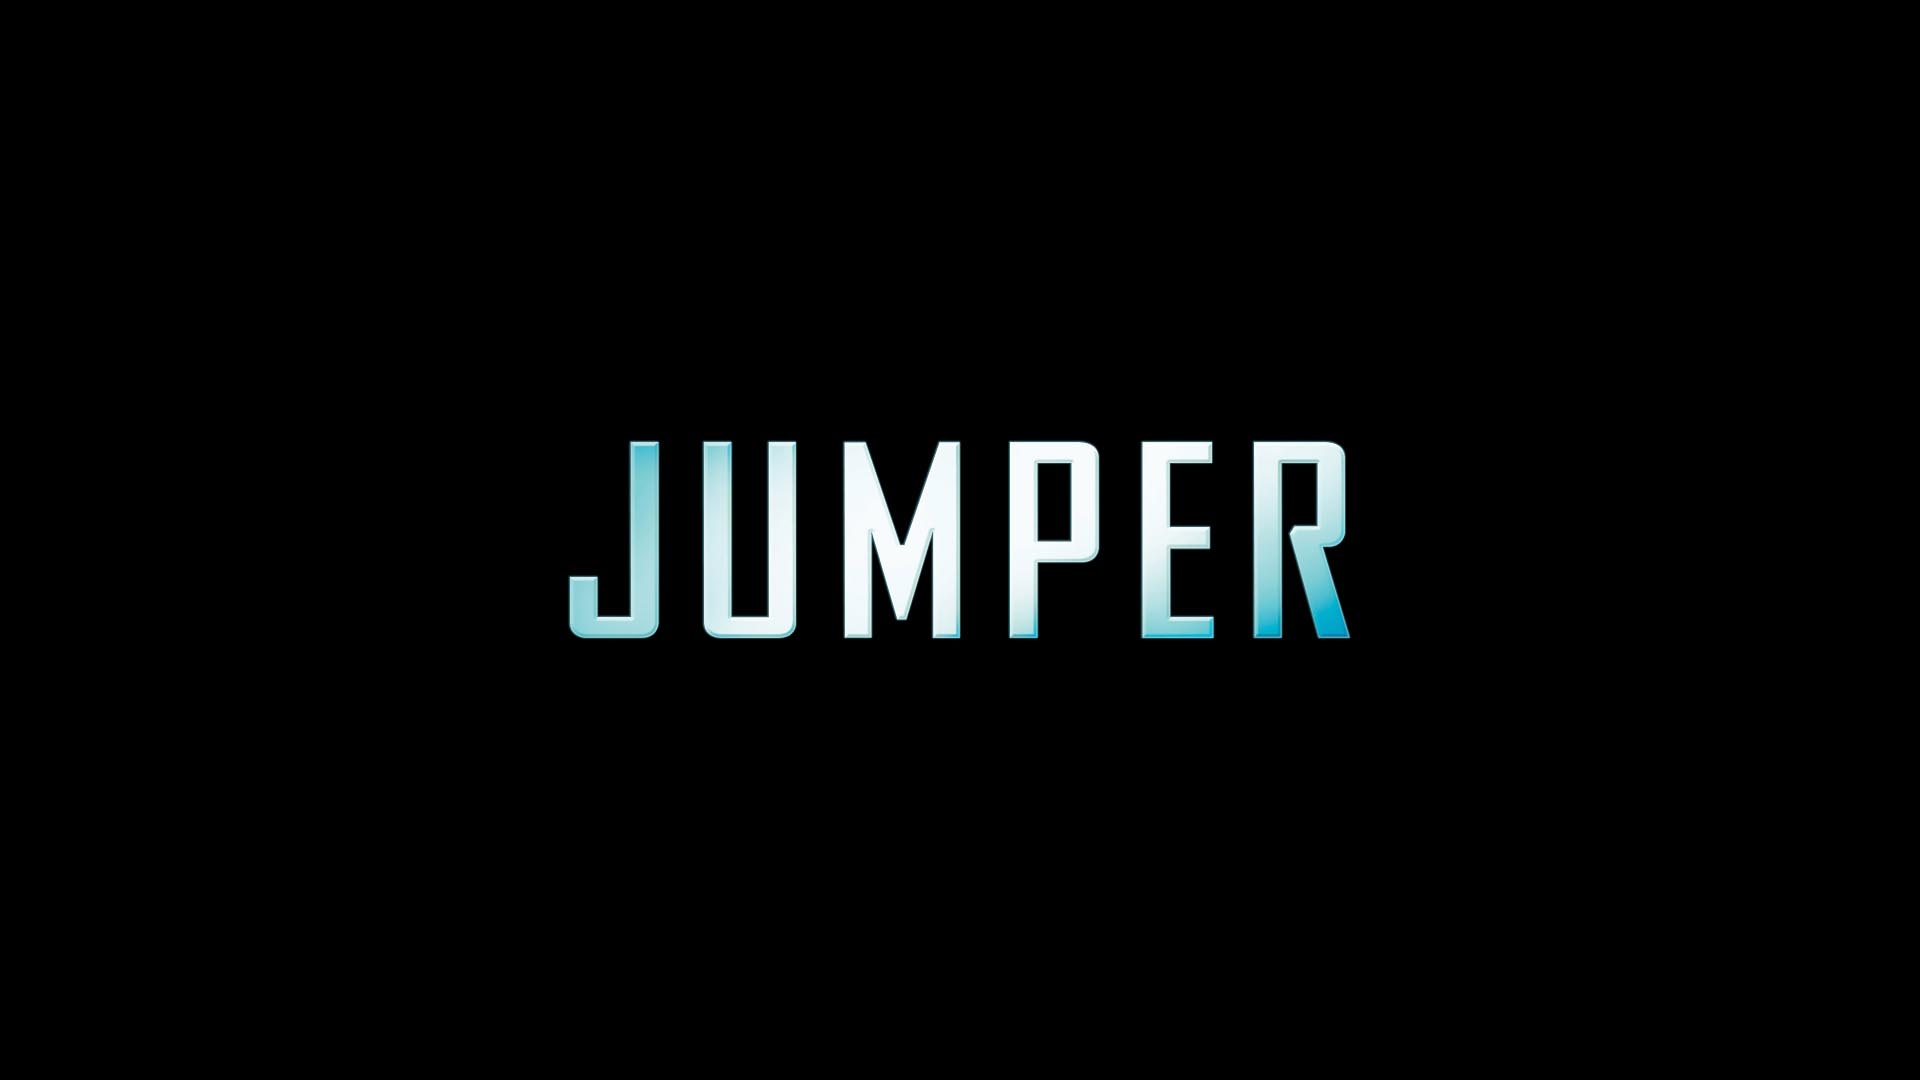 Descargar fondos de escritorio de Jumper HD